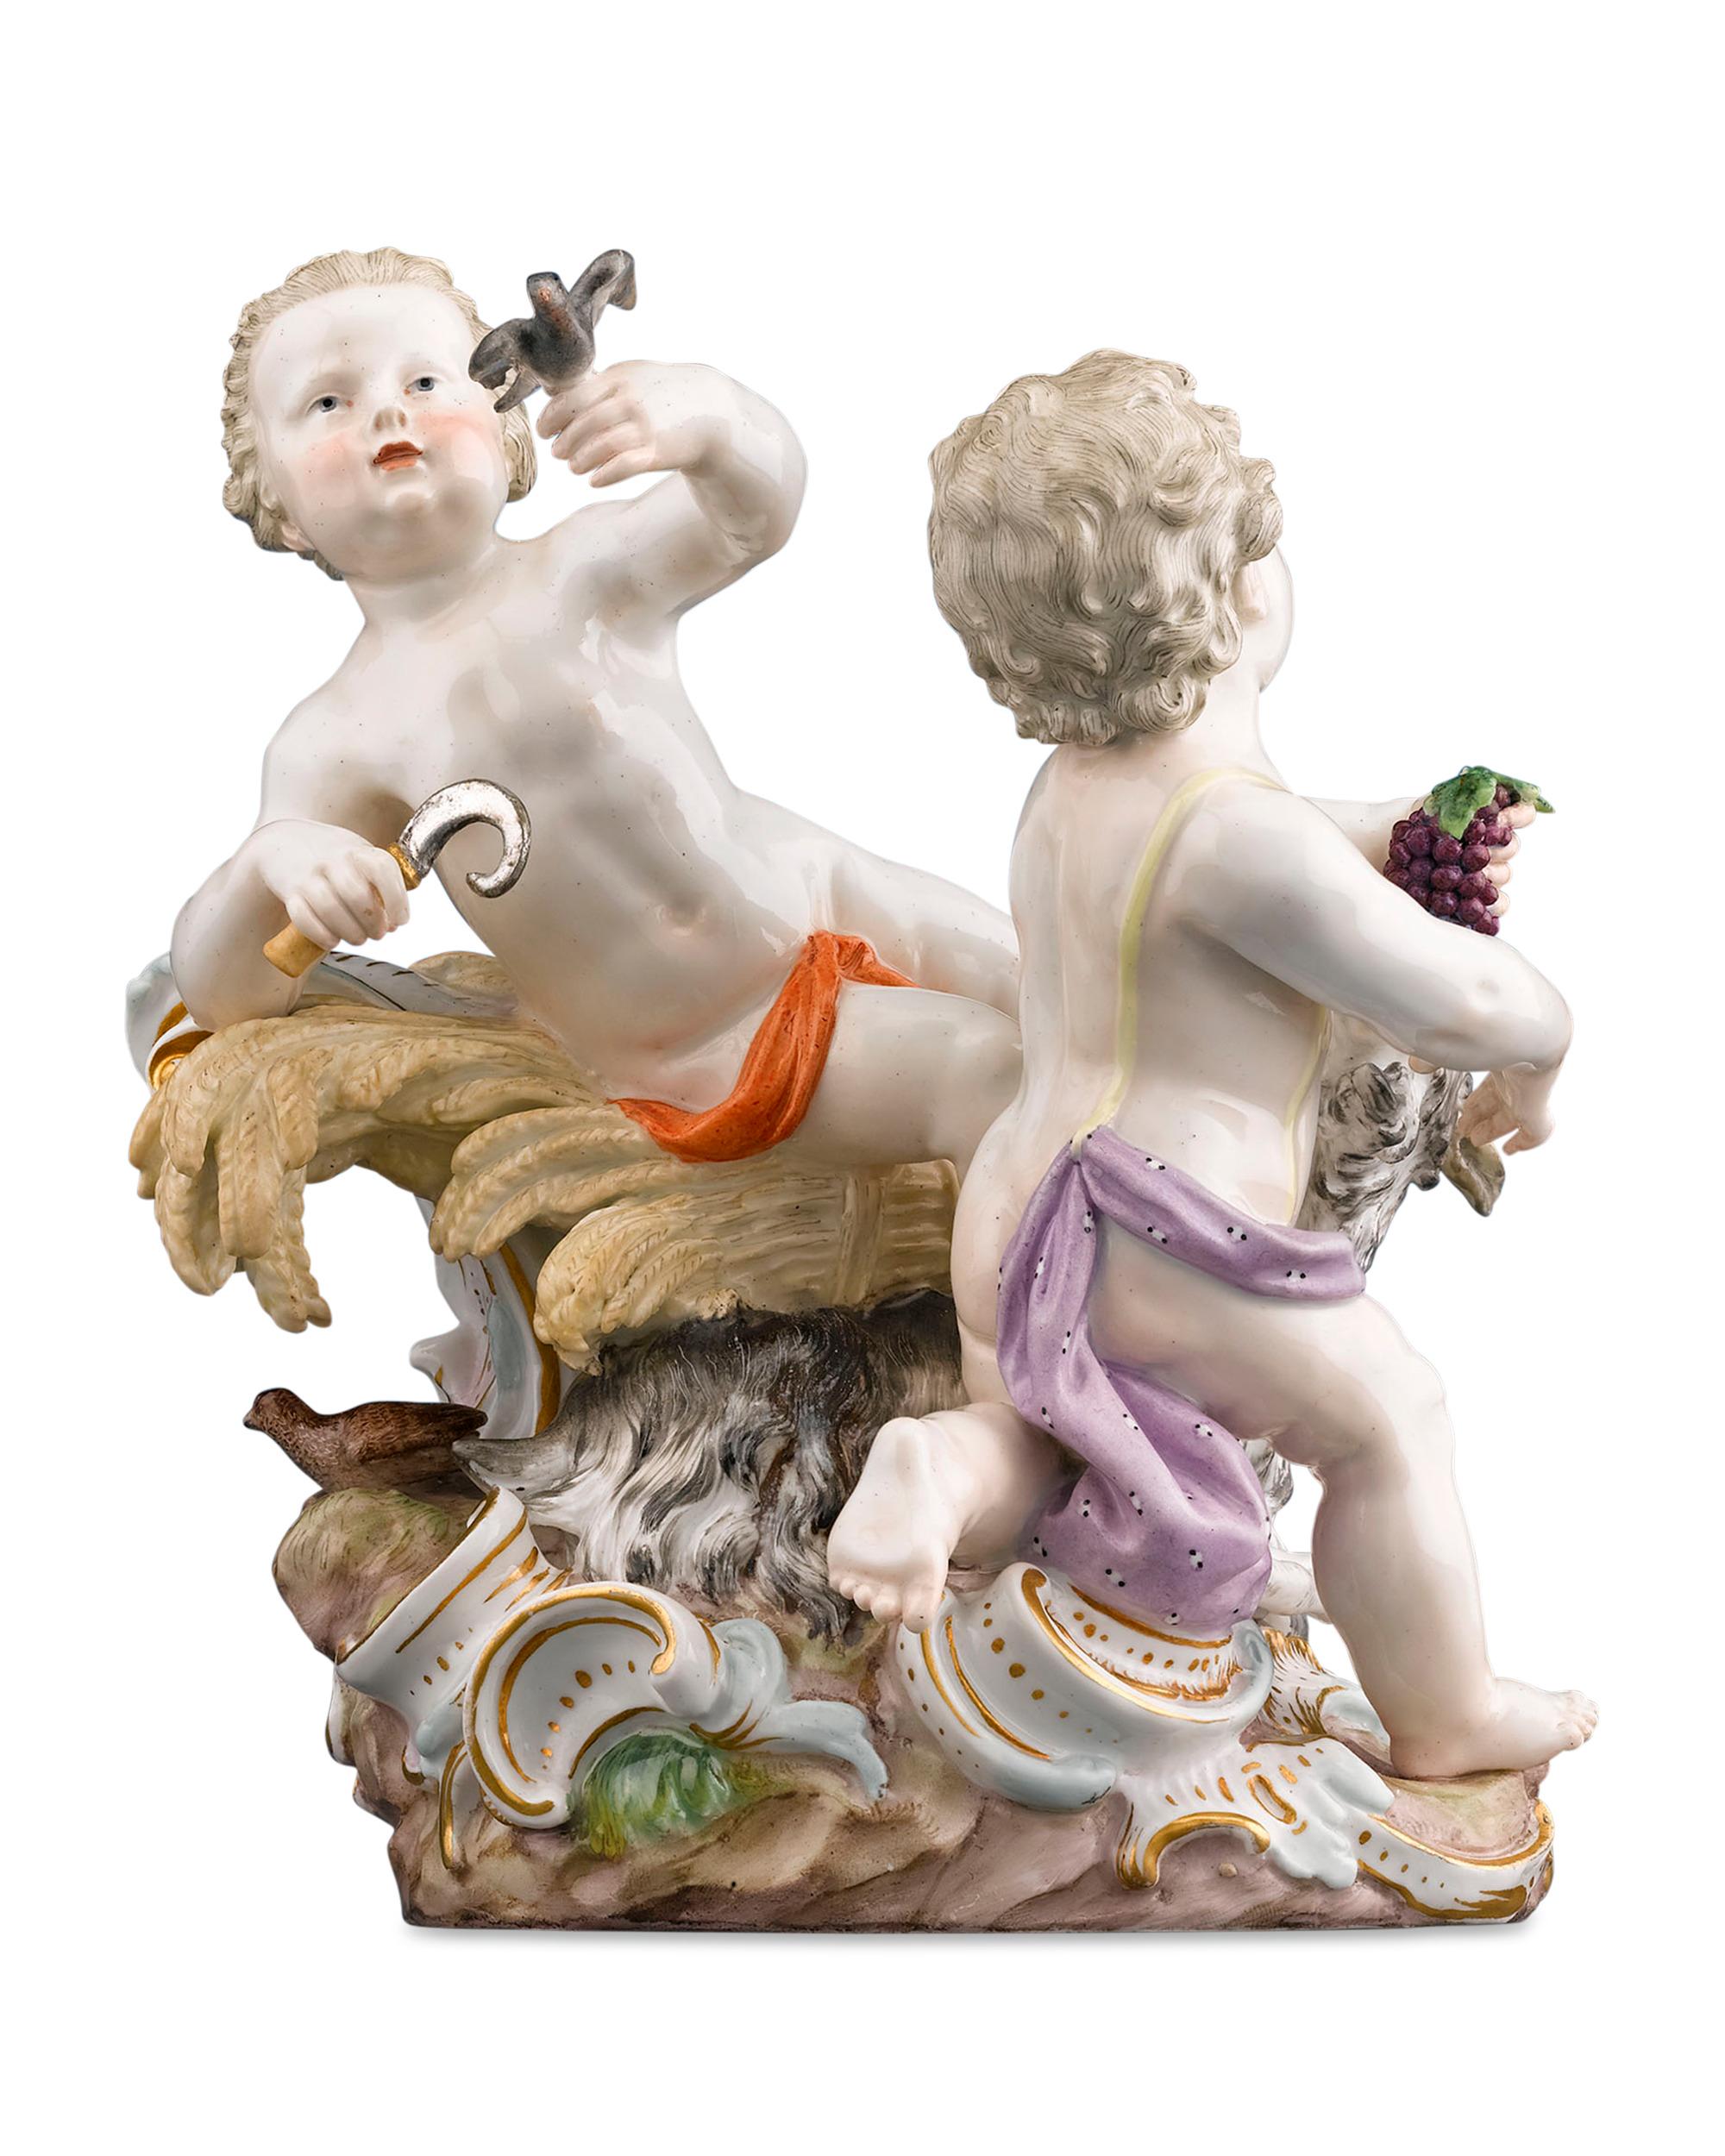 Cette magnifique figurine en porcelaine de Meissen, intitulée Été et Automne, fait partie de la célèbre série des Saisons. Les putti reposent sur une base en forme de Rocaille et tiennent des représentations de leurs saisons respectives : L'automne